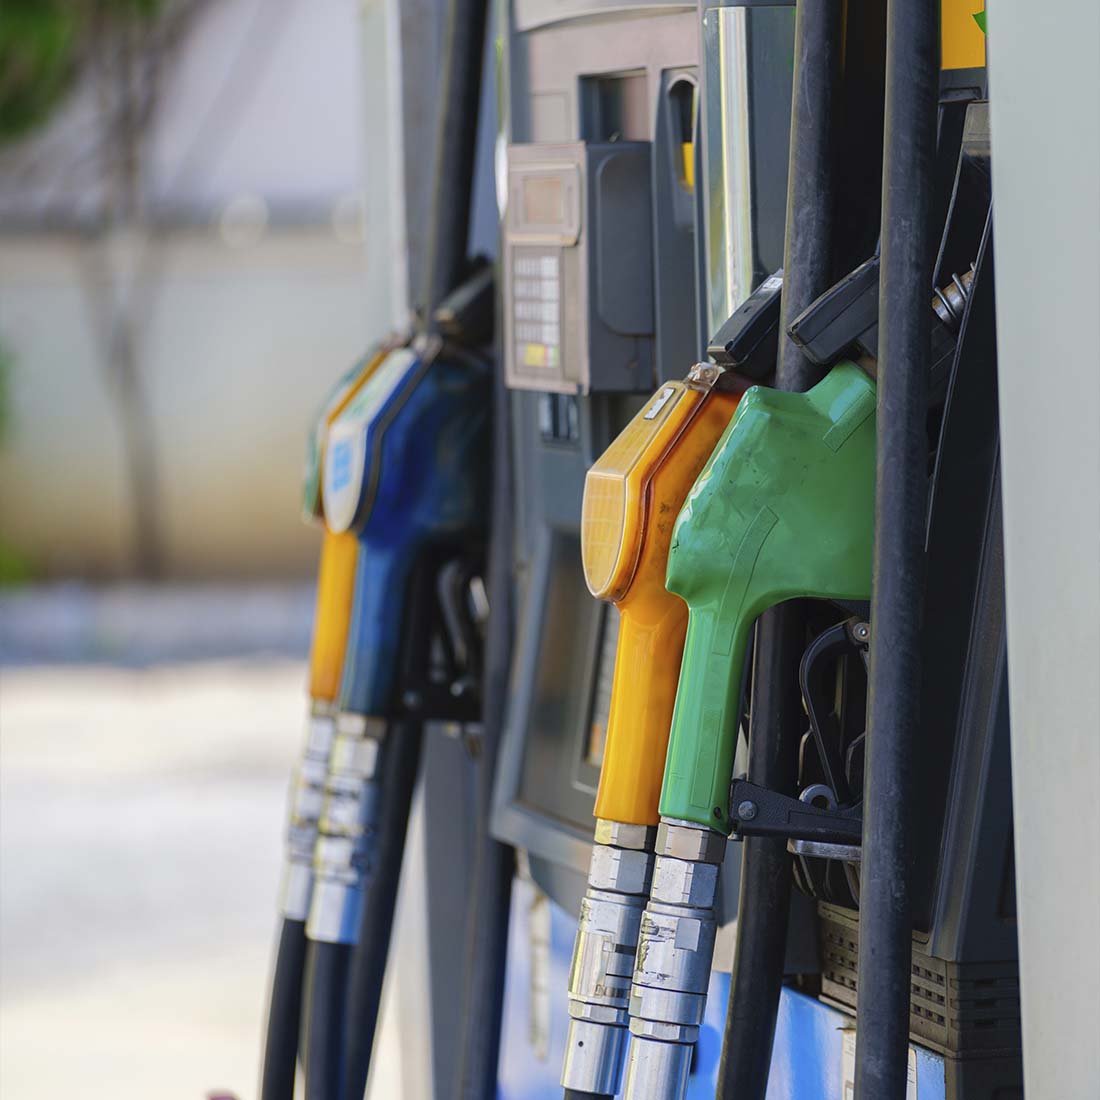 Precios de combustible en España: Estabilidad superficial oculta una realidad preocupante